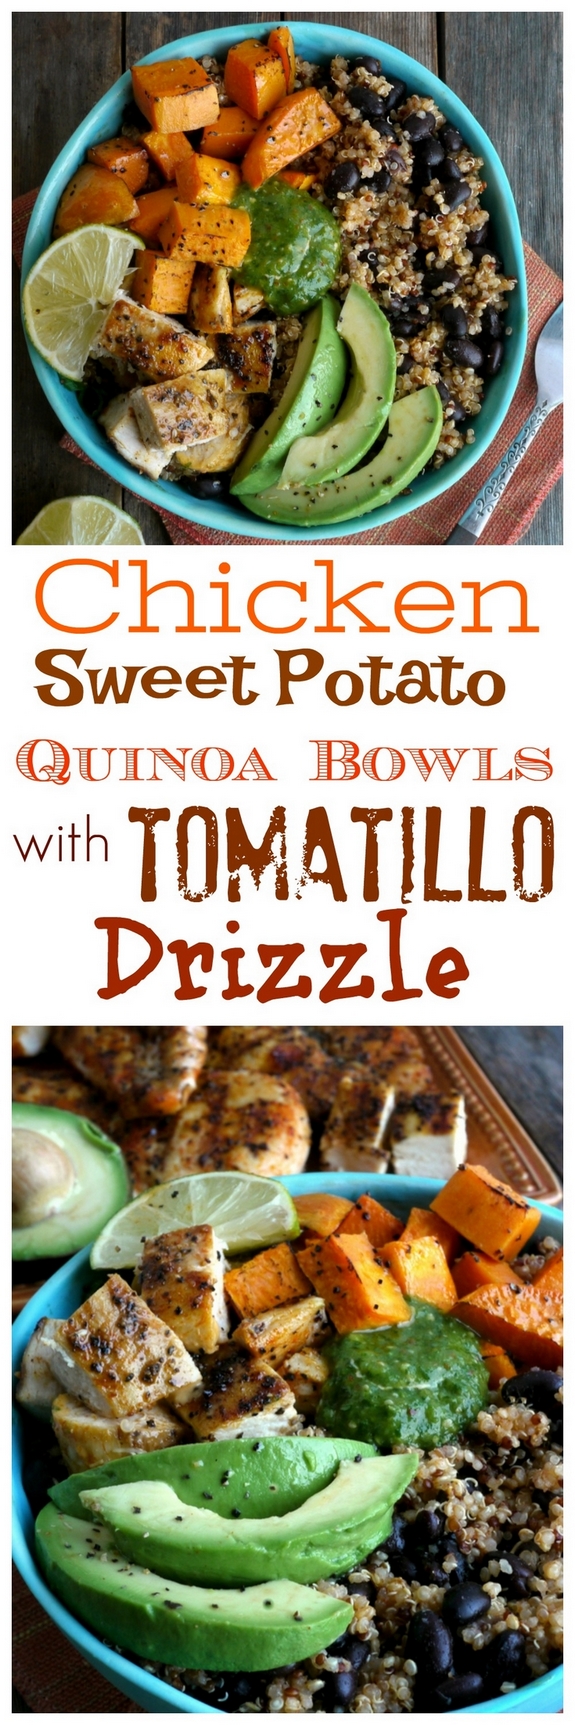 Chicken, Sweet Potato and Quinoa Bowls with Tomatillo Drizzle